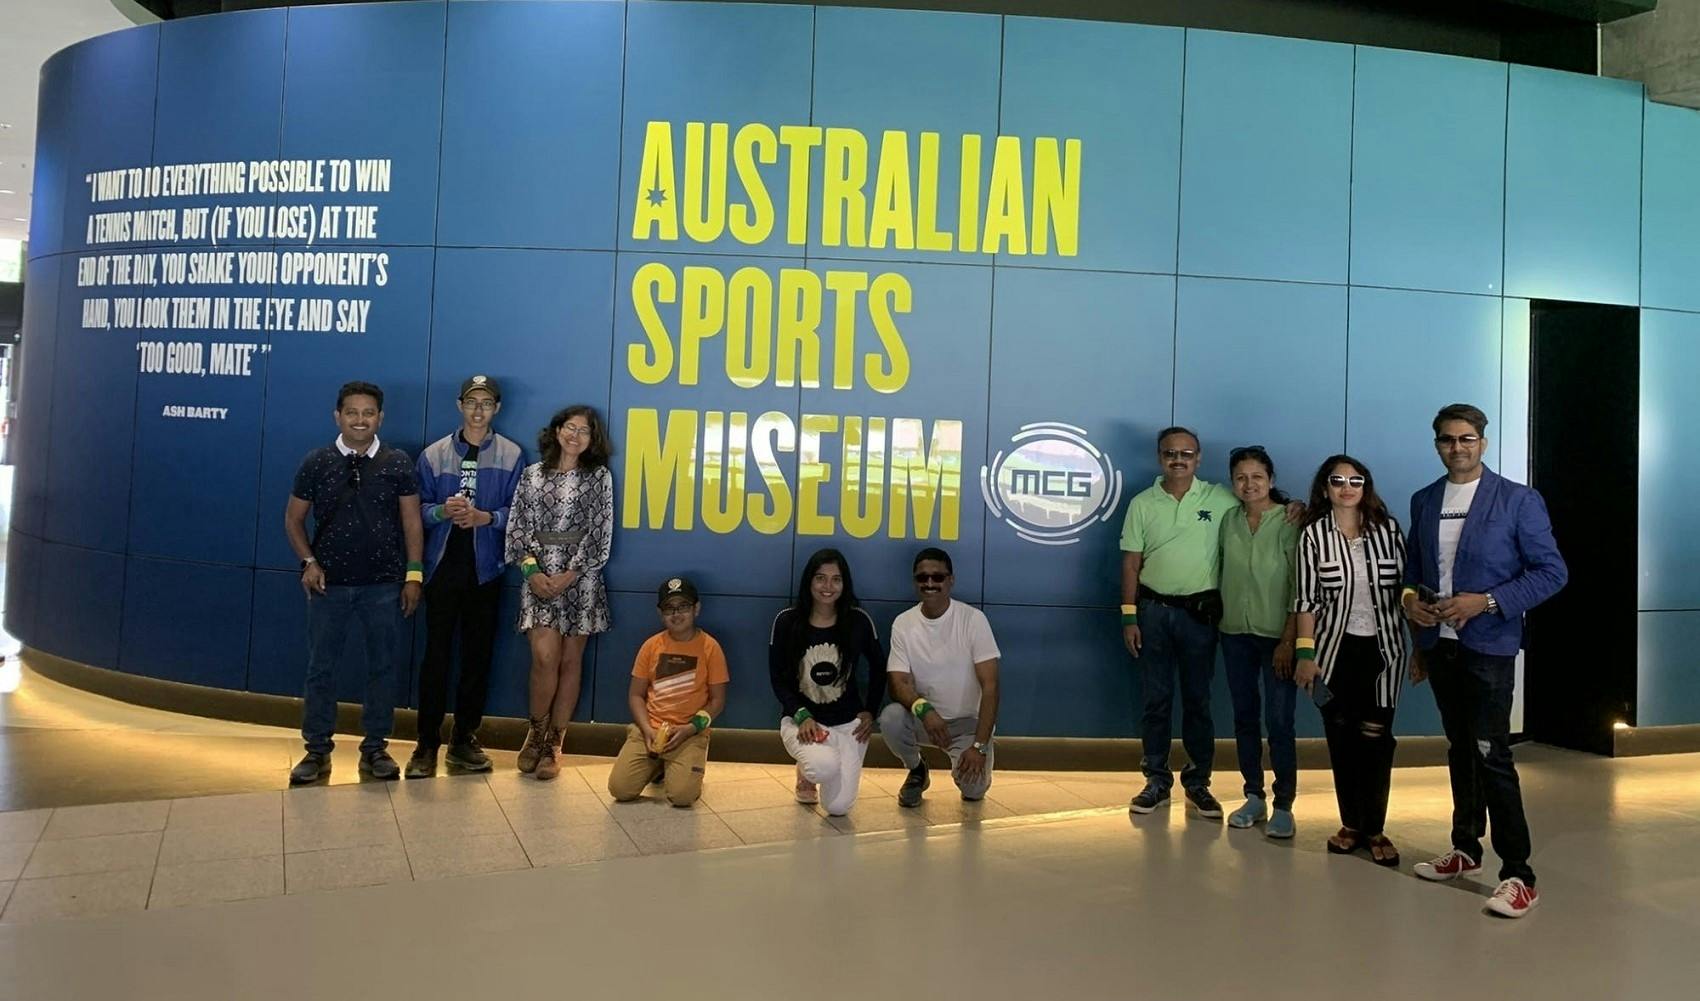 Tour del distretto sportivo di Melbourne e dell'Australian Sports Museum